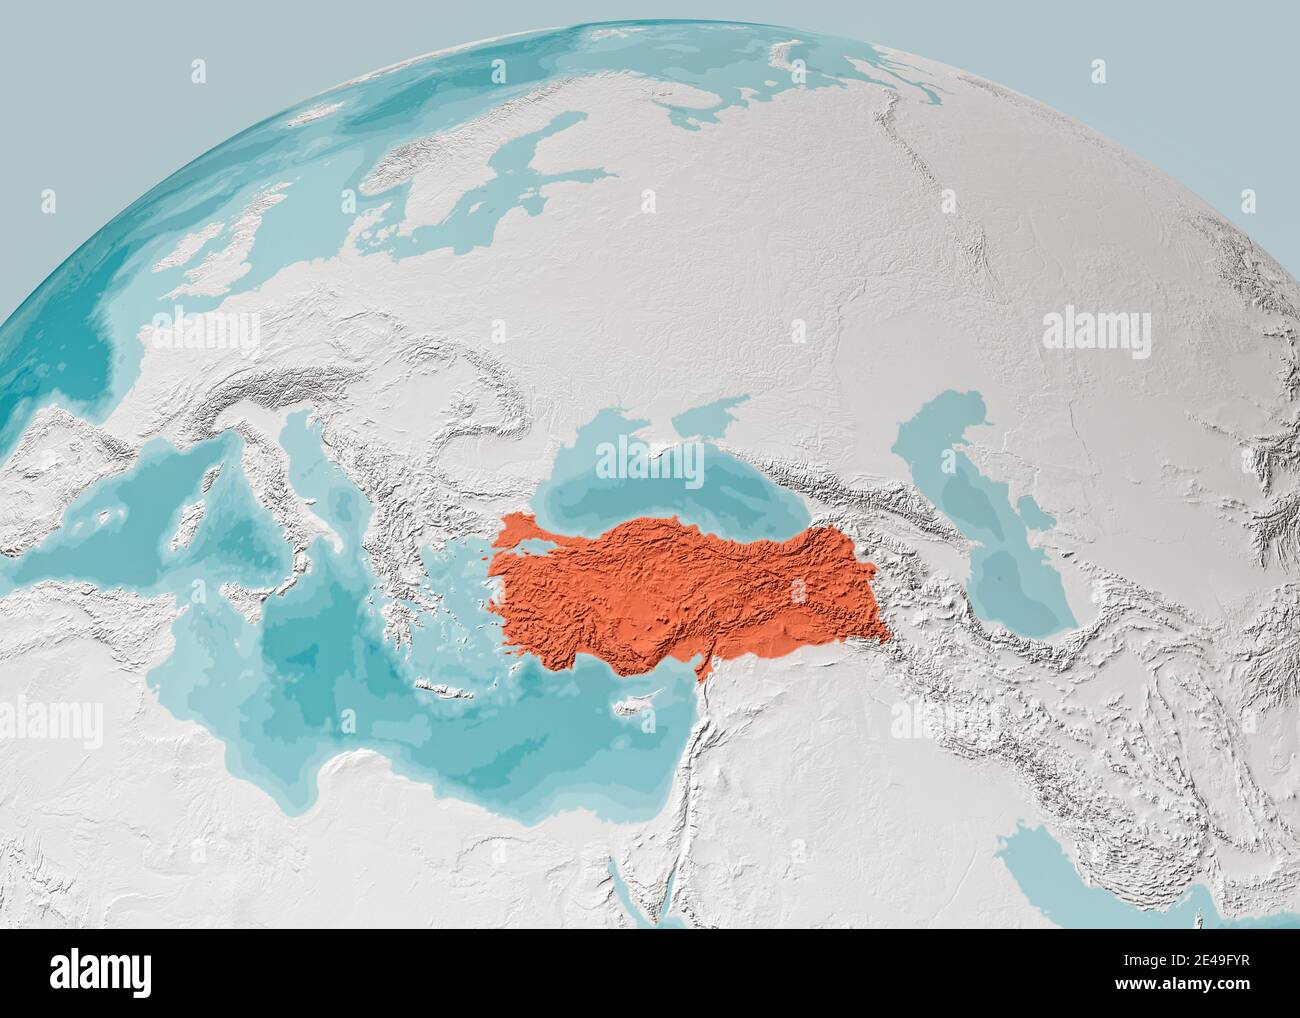 Weltkarte des Mittelmeers und der Türkei, Asien, Europa Afrika und dem Nahen Osten. Kartographie, geographischer Atlas. 3d-Rendering. Bathymetrie, unterw Stockfoto